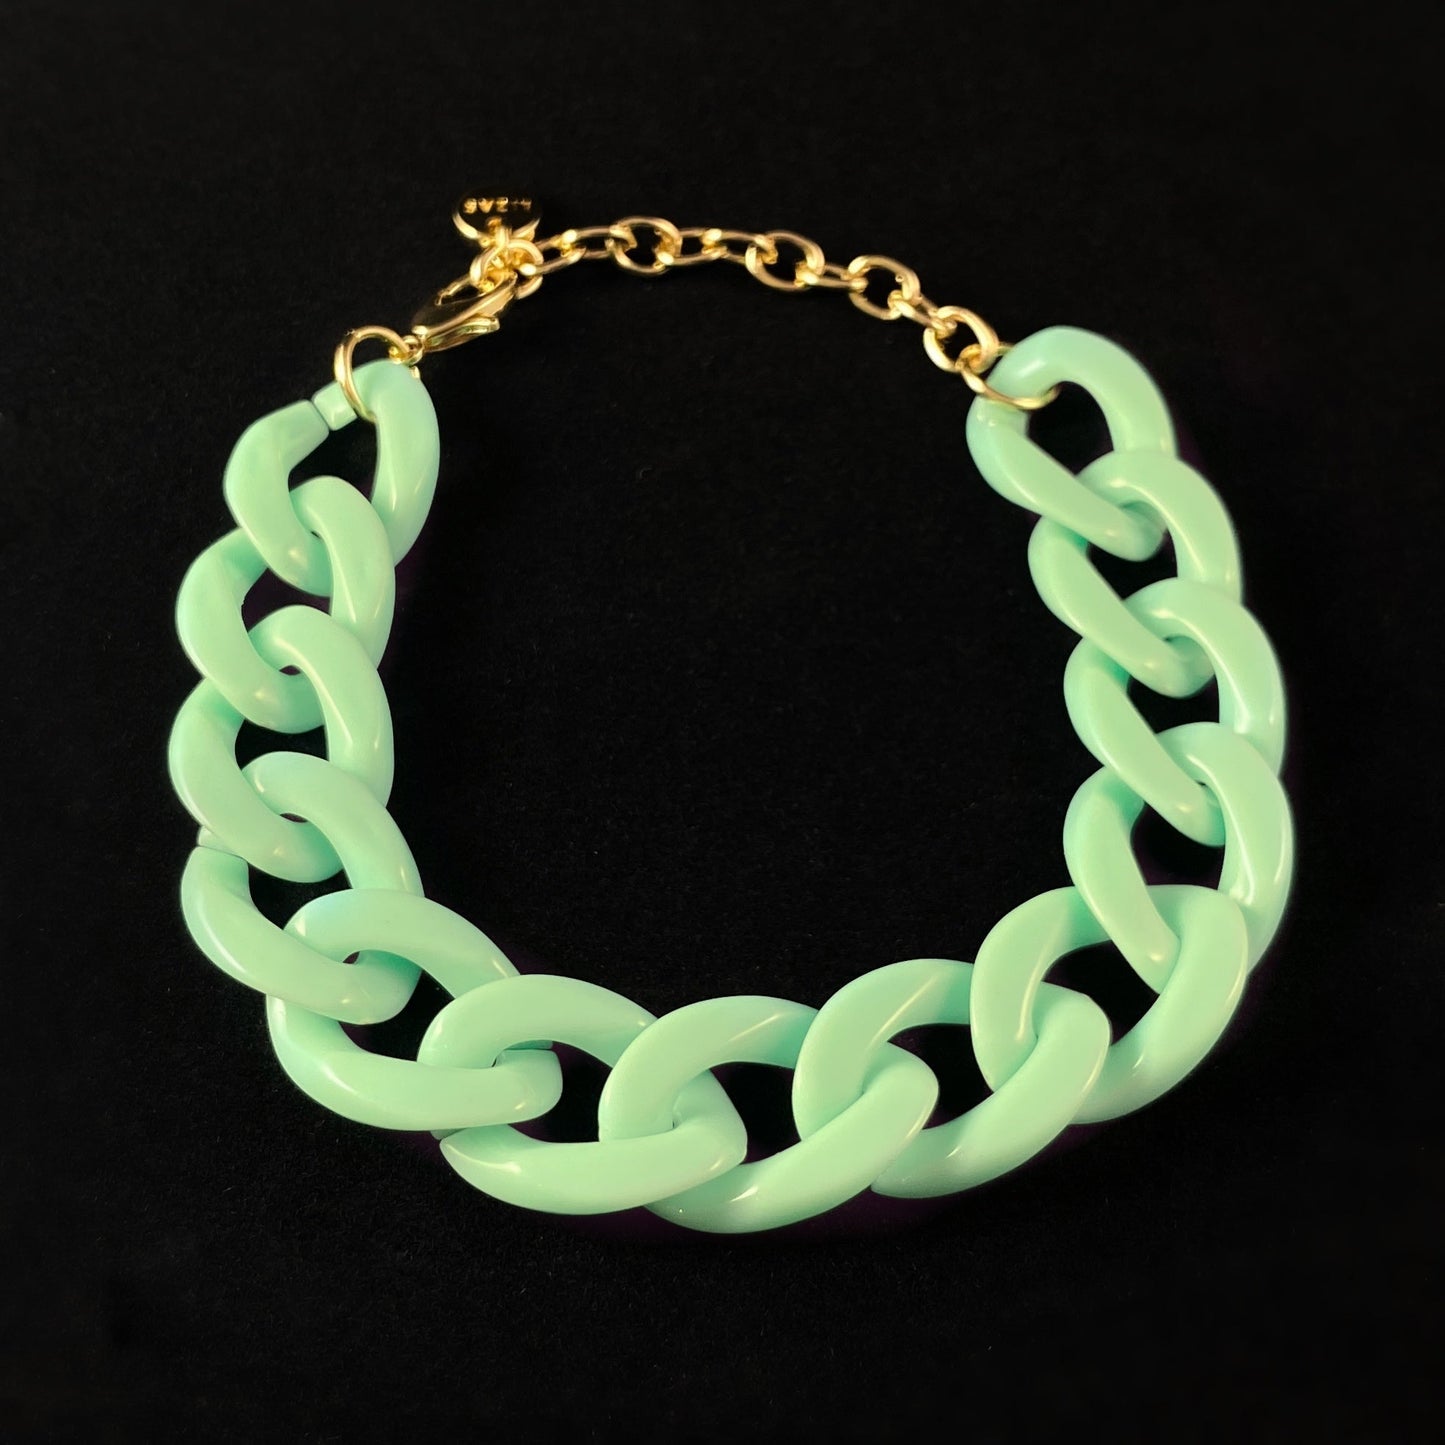 Chunky Chain Link Bracelet - Light Green